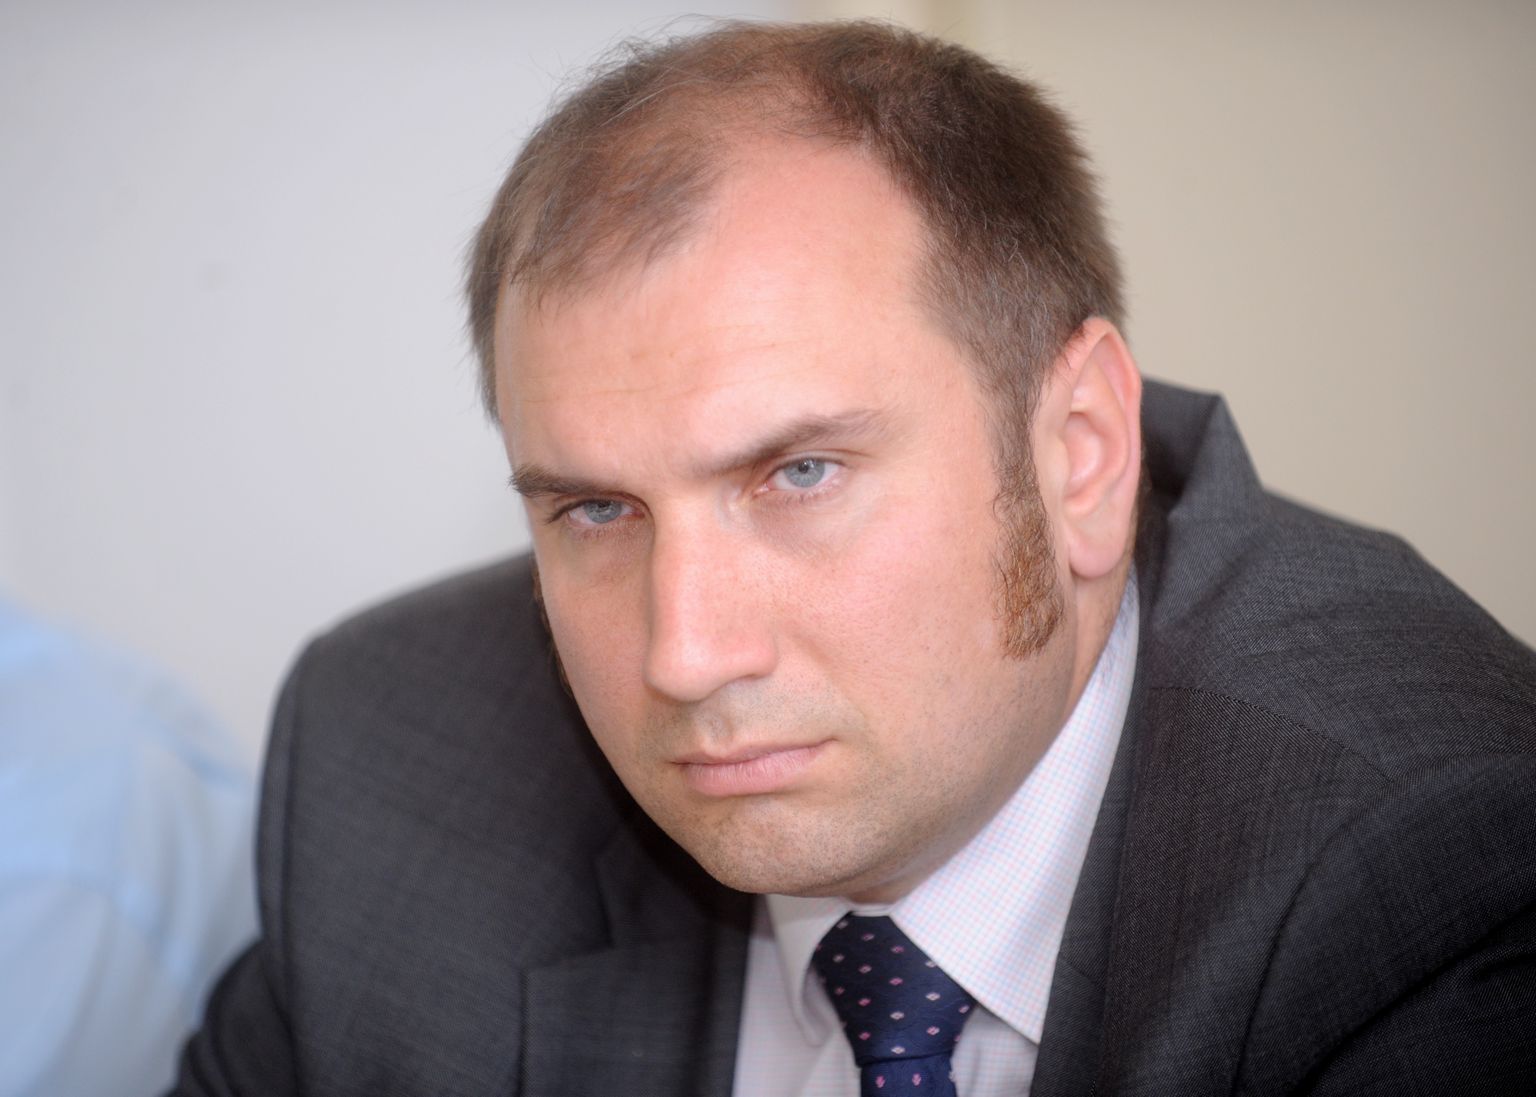 Jelgavas novada domes priekšsēdētājs Madars Lasmanis